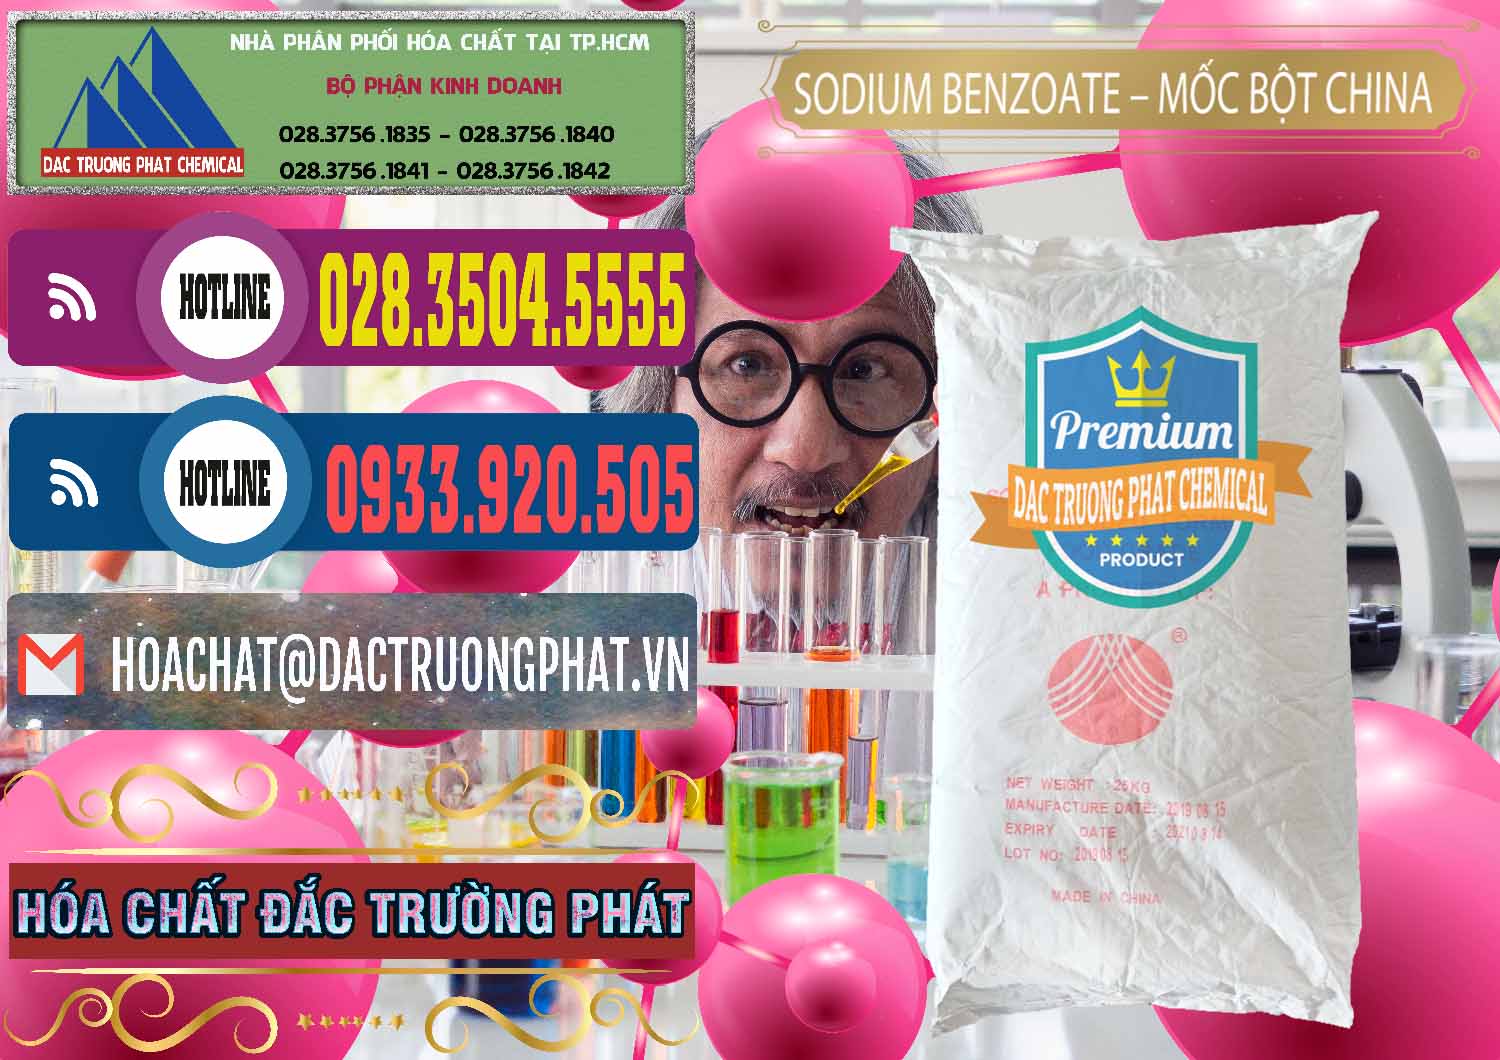 Cty bán ( cung ứng ) Sodium Benzoate - Mốc Bột Chữ Cam Food Grade Trung Quốc China - 0135 - Cty chuyên cung cấp _ bán hóa chất tại TP.HCM - muabanhoachat.com.vn